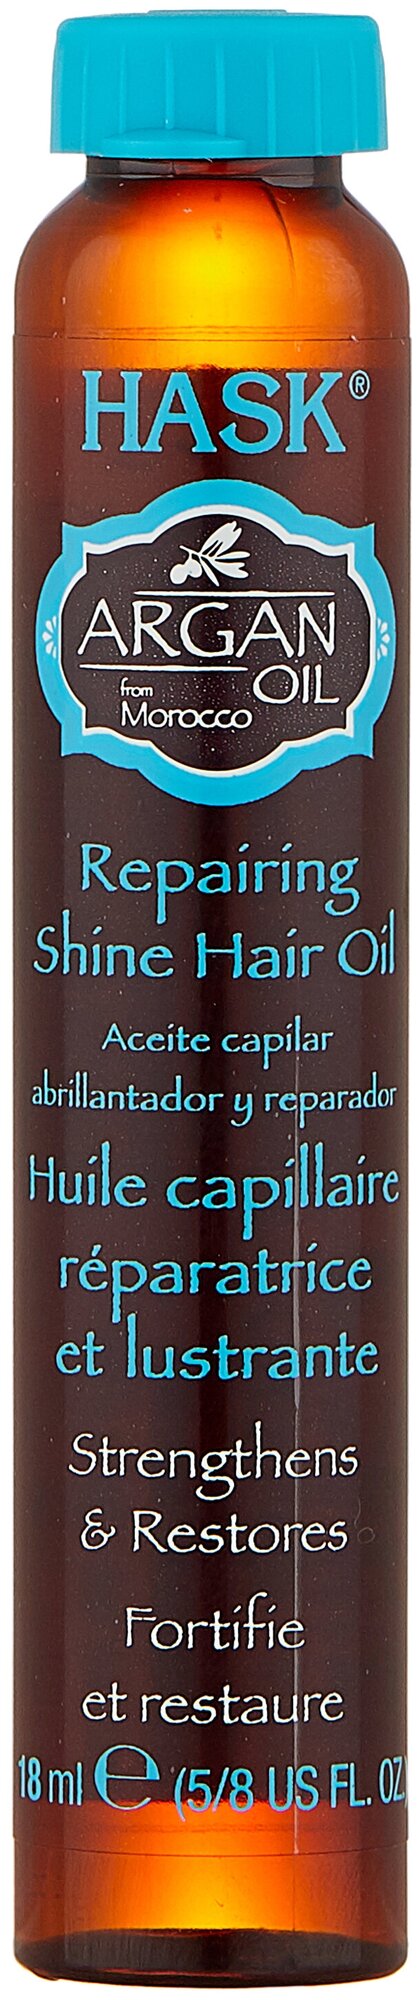 Hask Argan Oil Масло для восстановления и придания блеска волосам, 18 мл